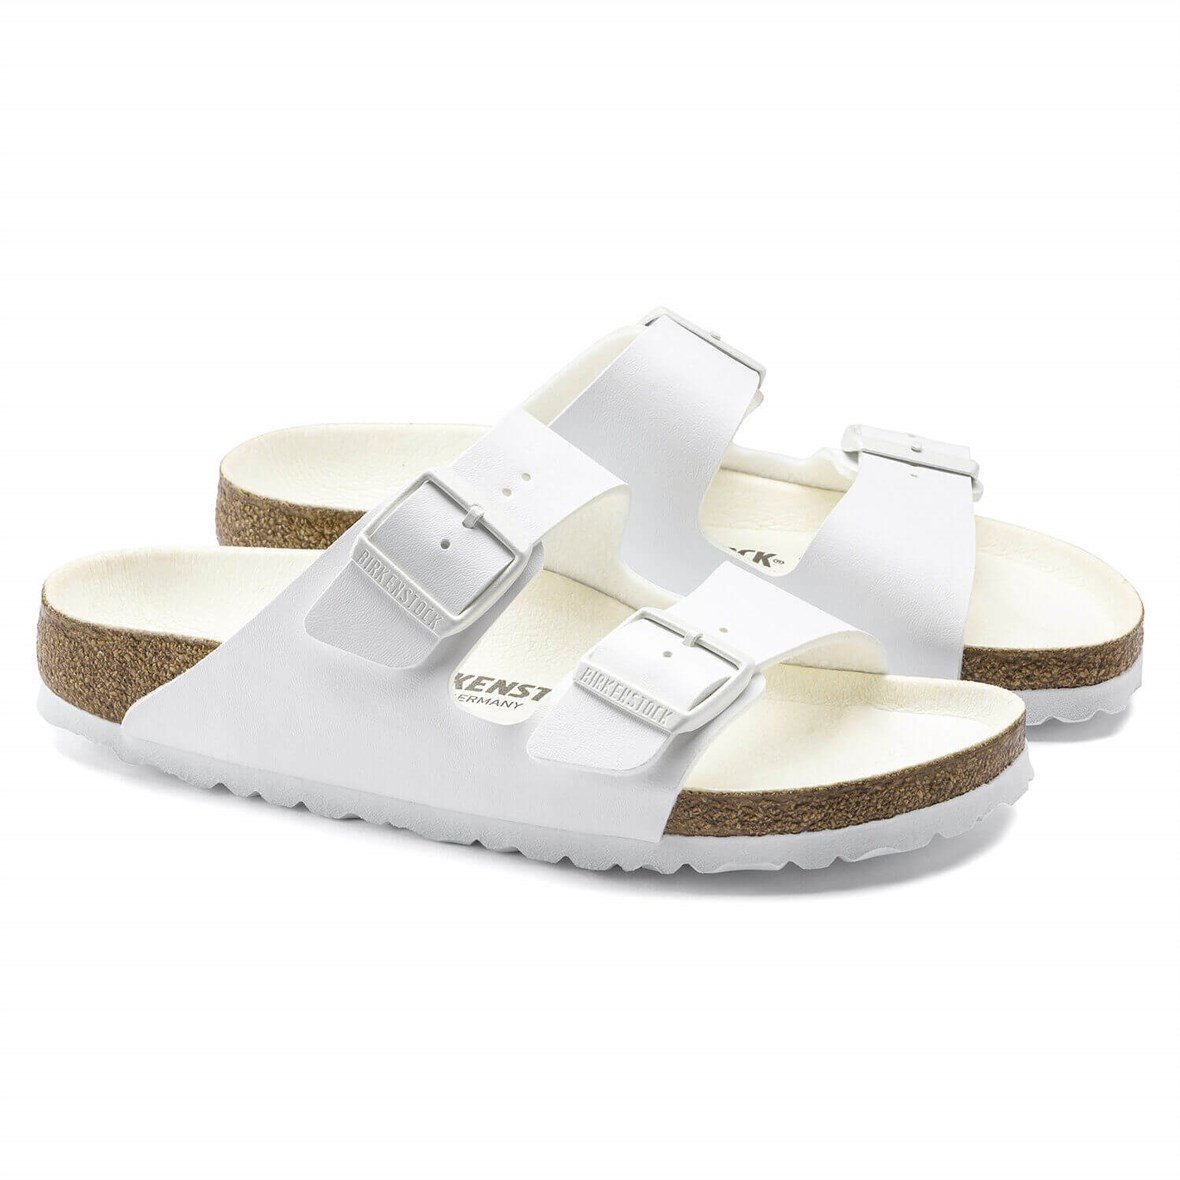 Birkenstock Arizona Bayan Terlik & Sandalet - Triples White (Üçlü Beyaz)